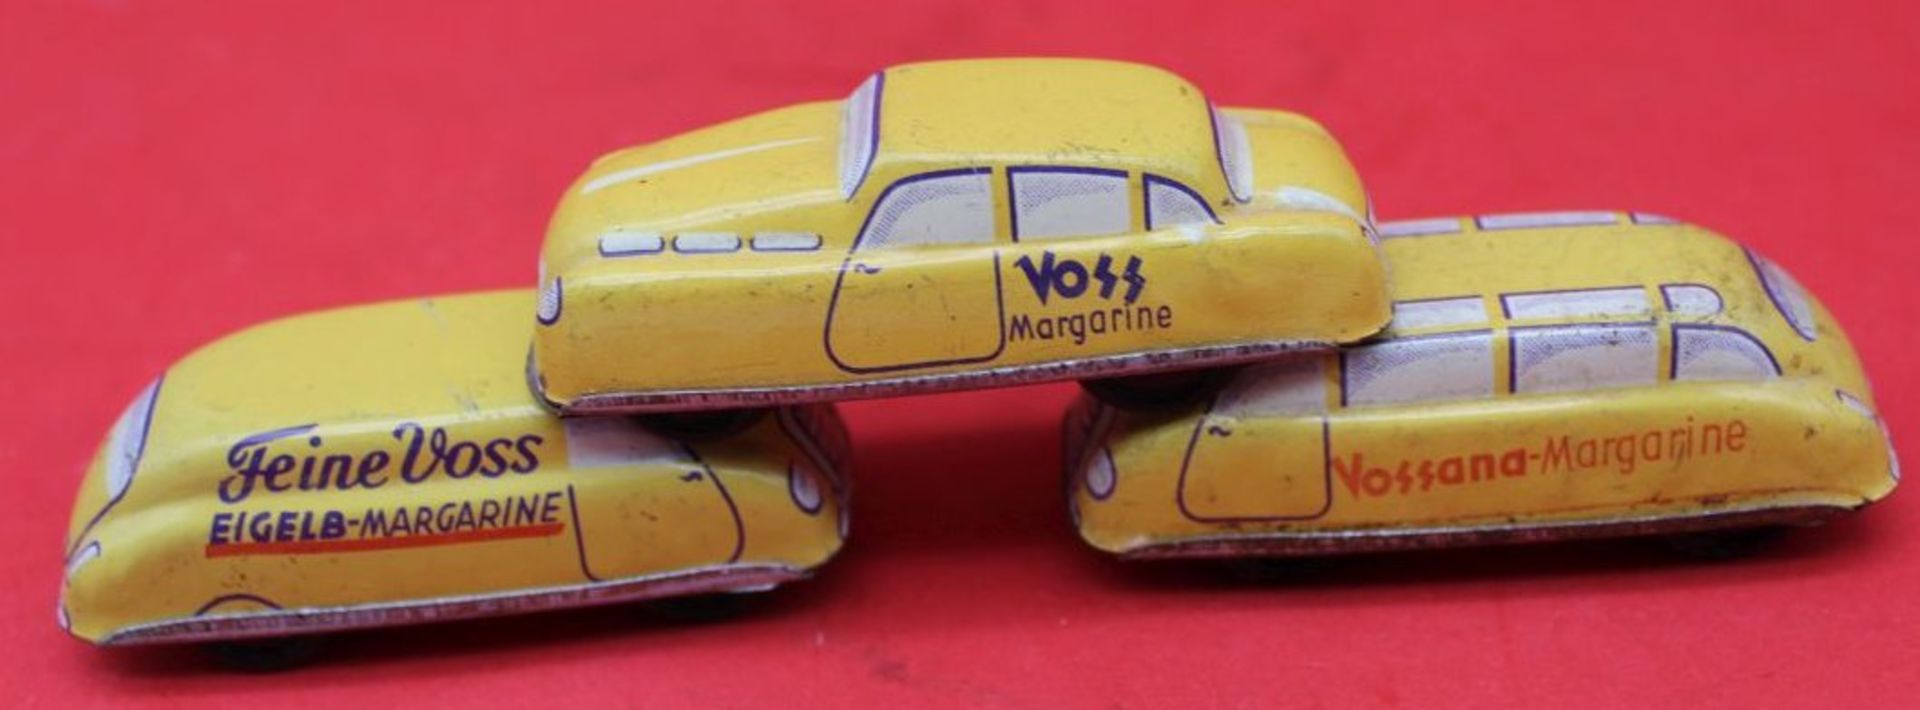 3x kl. Blechautos "Voss"Margarine, tw. bespielt, L-7 cm, Vorkrieg - Bild 2 aus 2